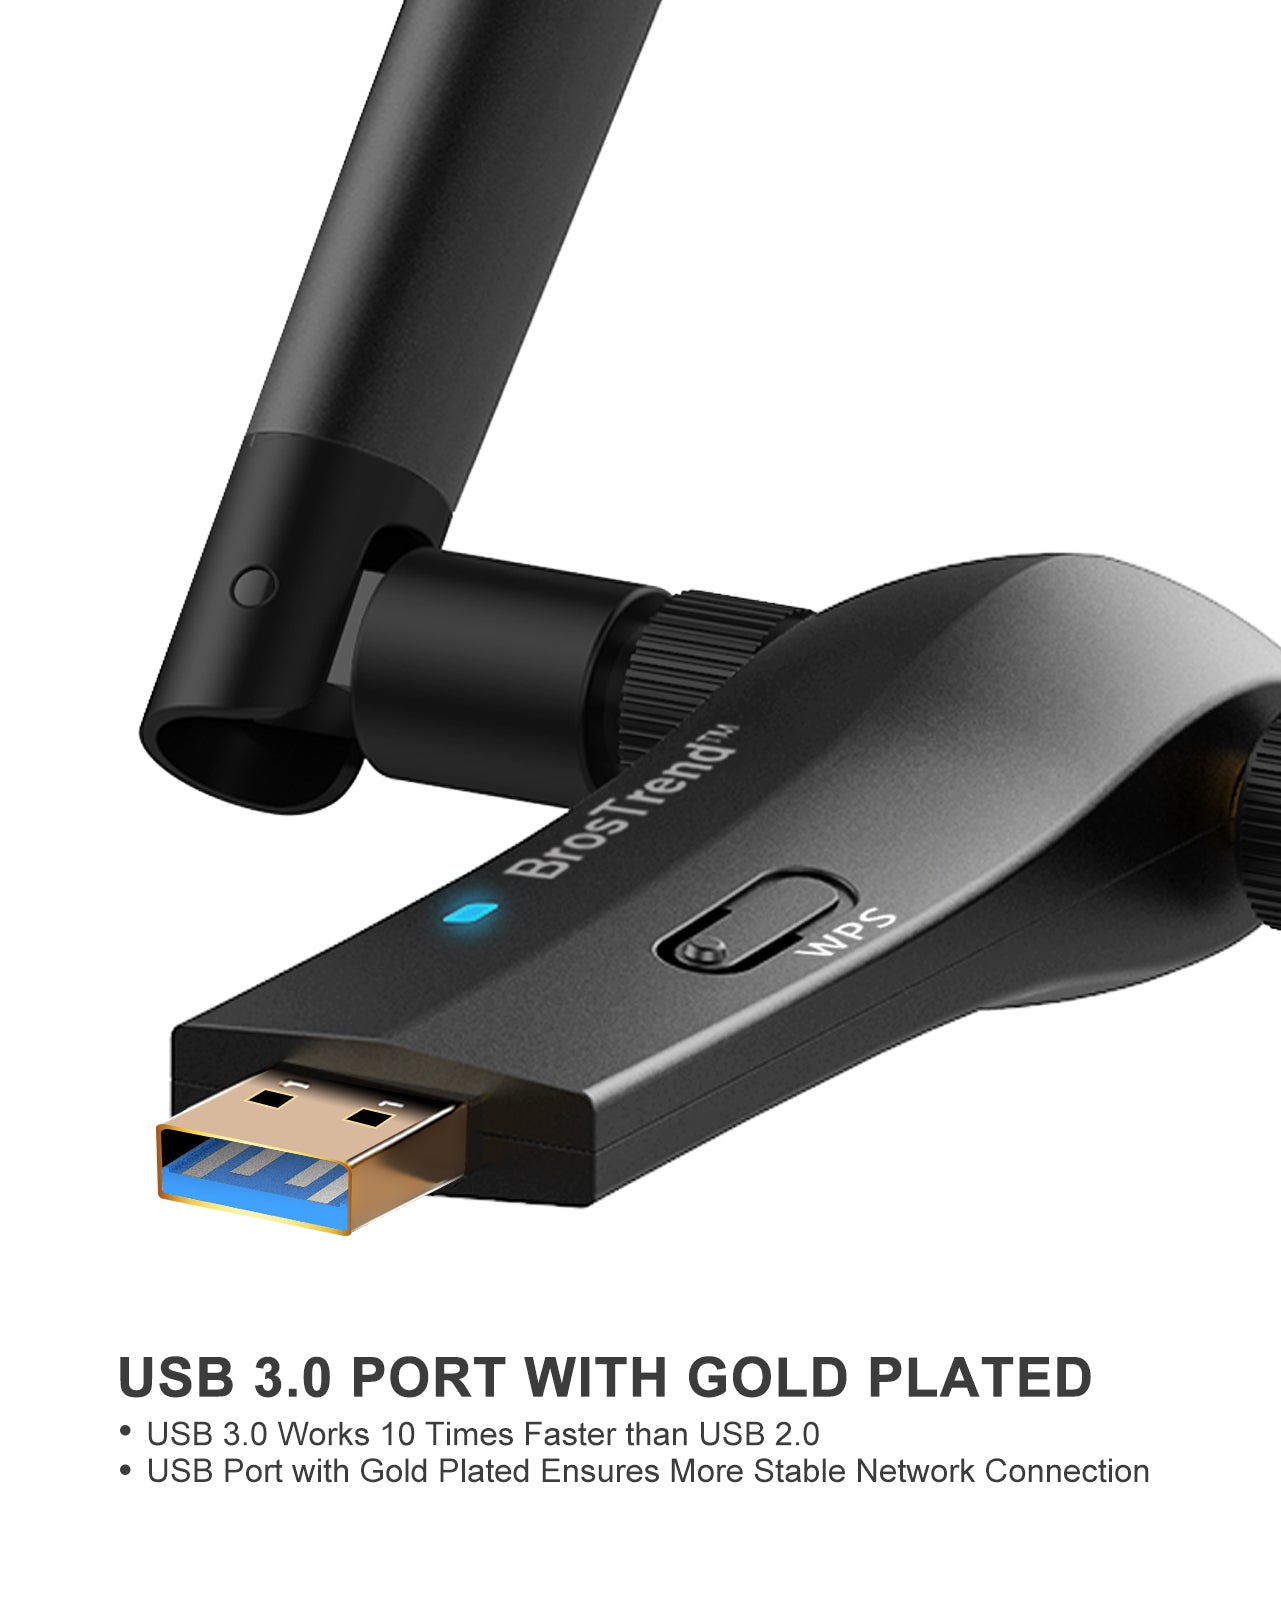 BrosTrend 1200Mbps Linux USB Clé WiFi Adaptateurs de réseau